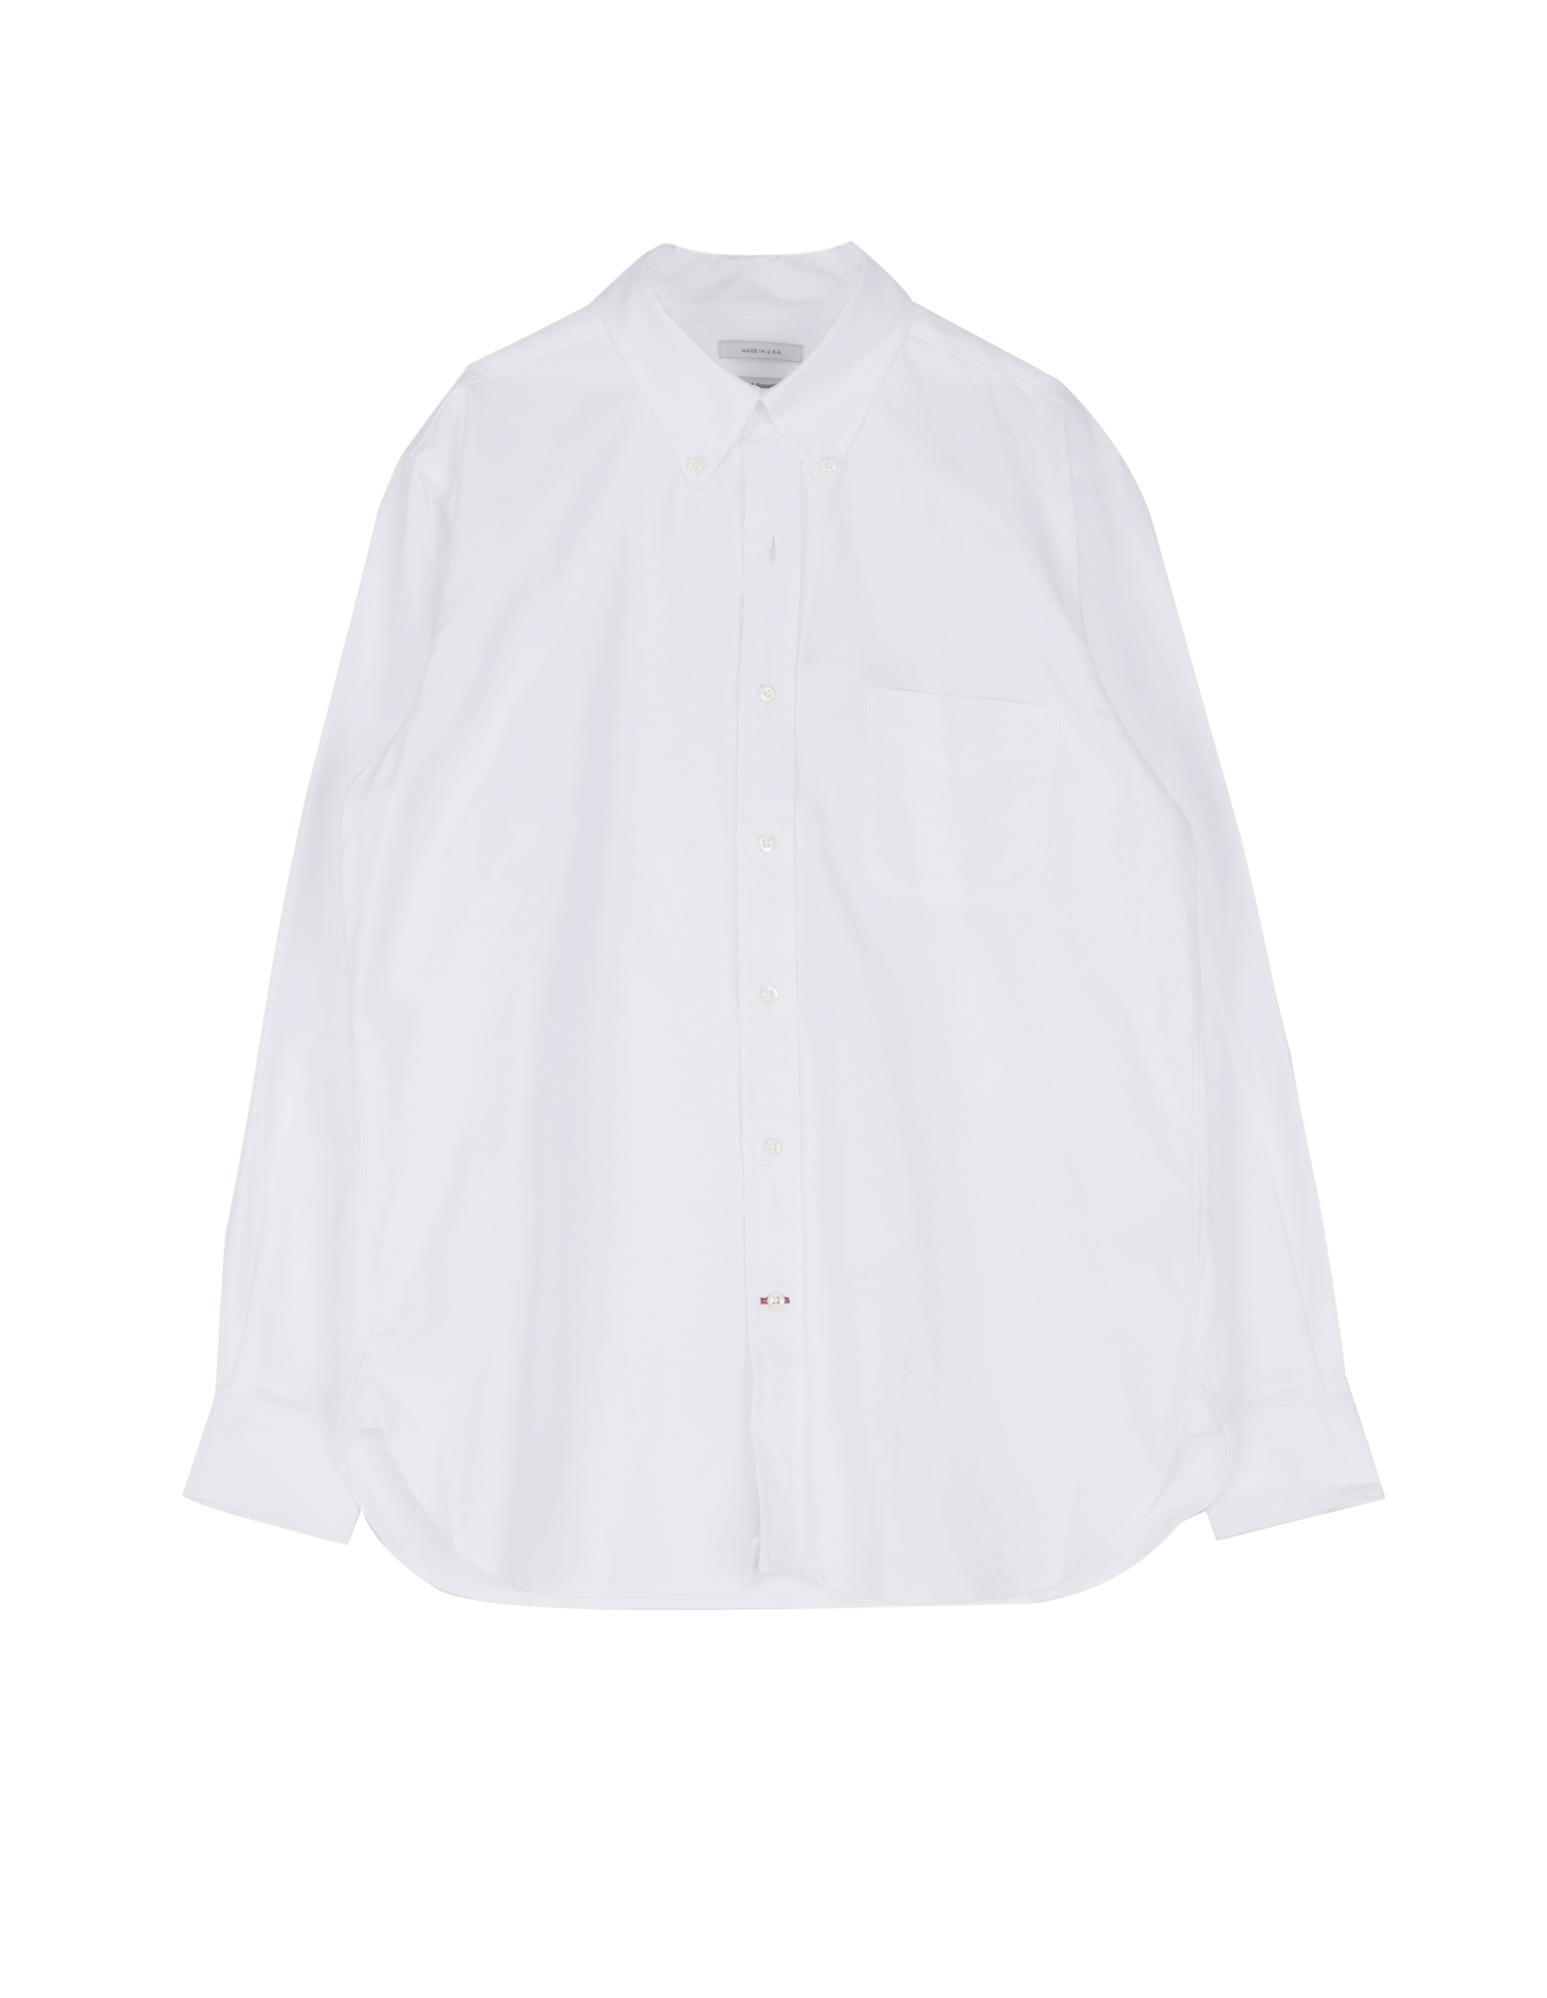 LSC American Oxford Shirts (White)